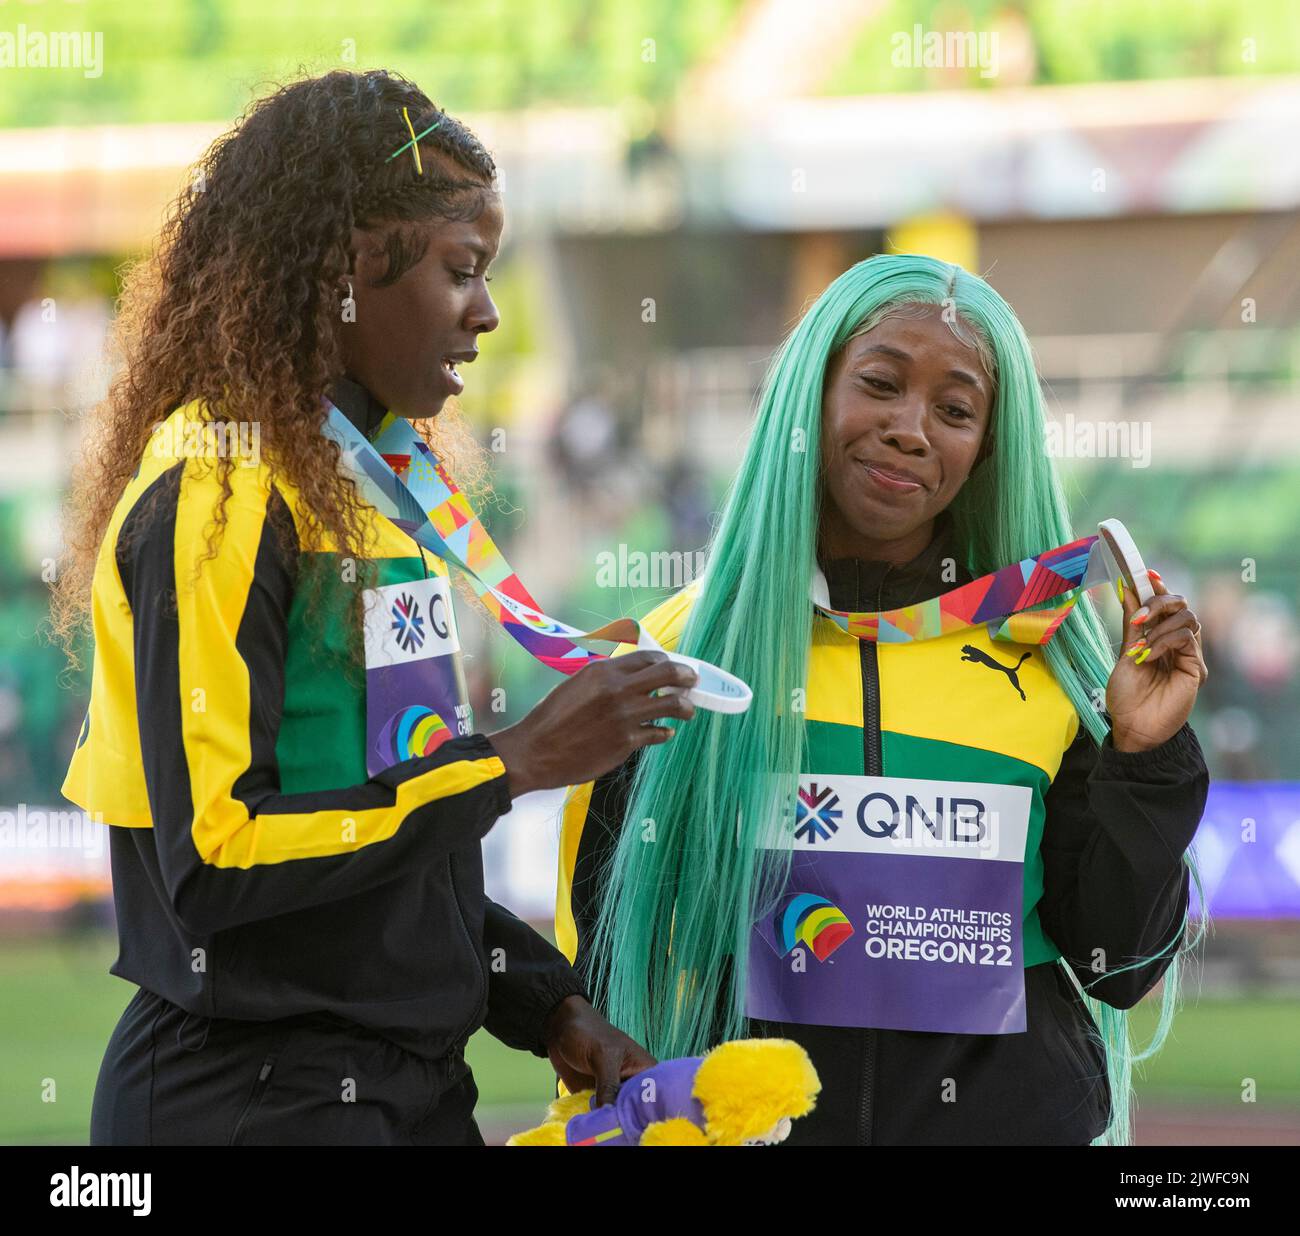 Shericka Jackson und Shelly-Ann Fraser - Pryce of Jamaica Medaillenübergabe für die Frauen 100m bei den Leichtathletik-Weltmeisterschaften, Hayward Field, Stockfoto